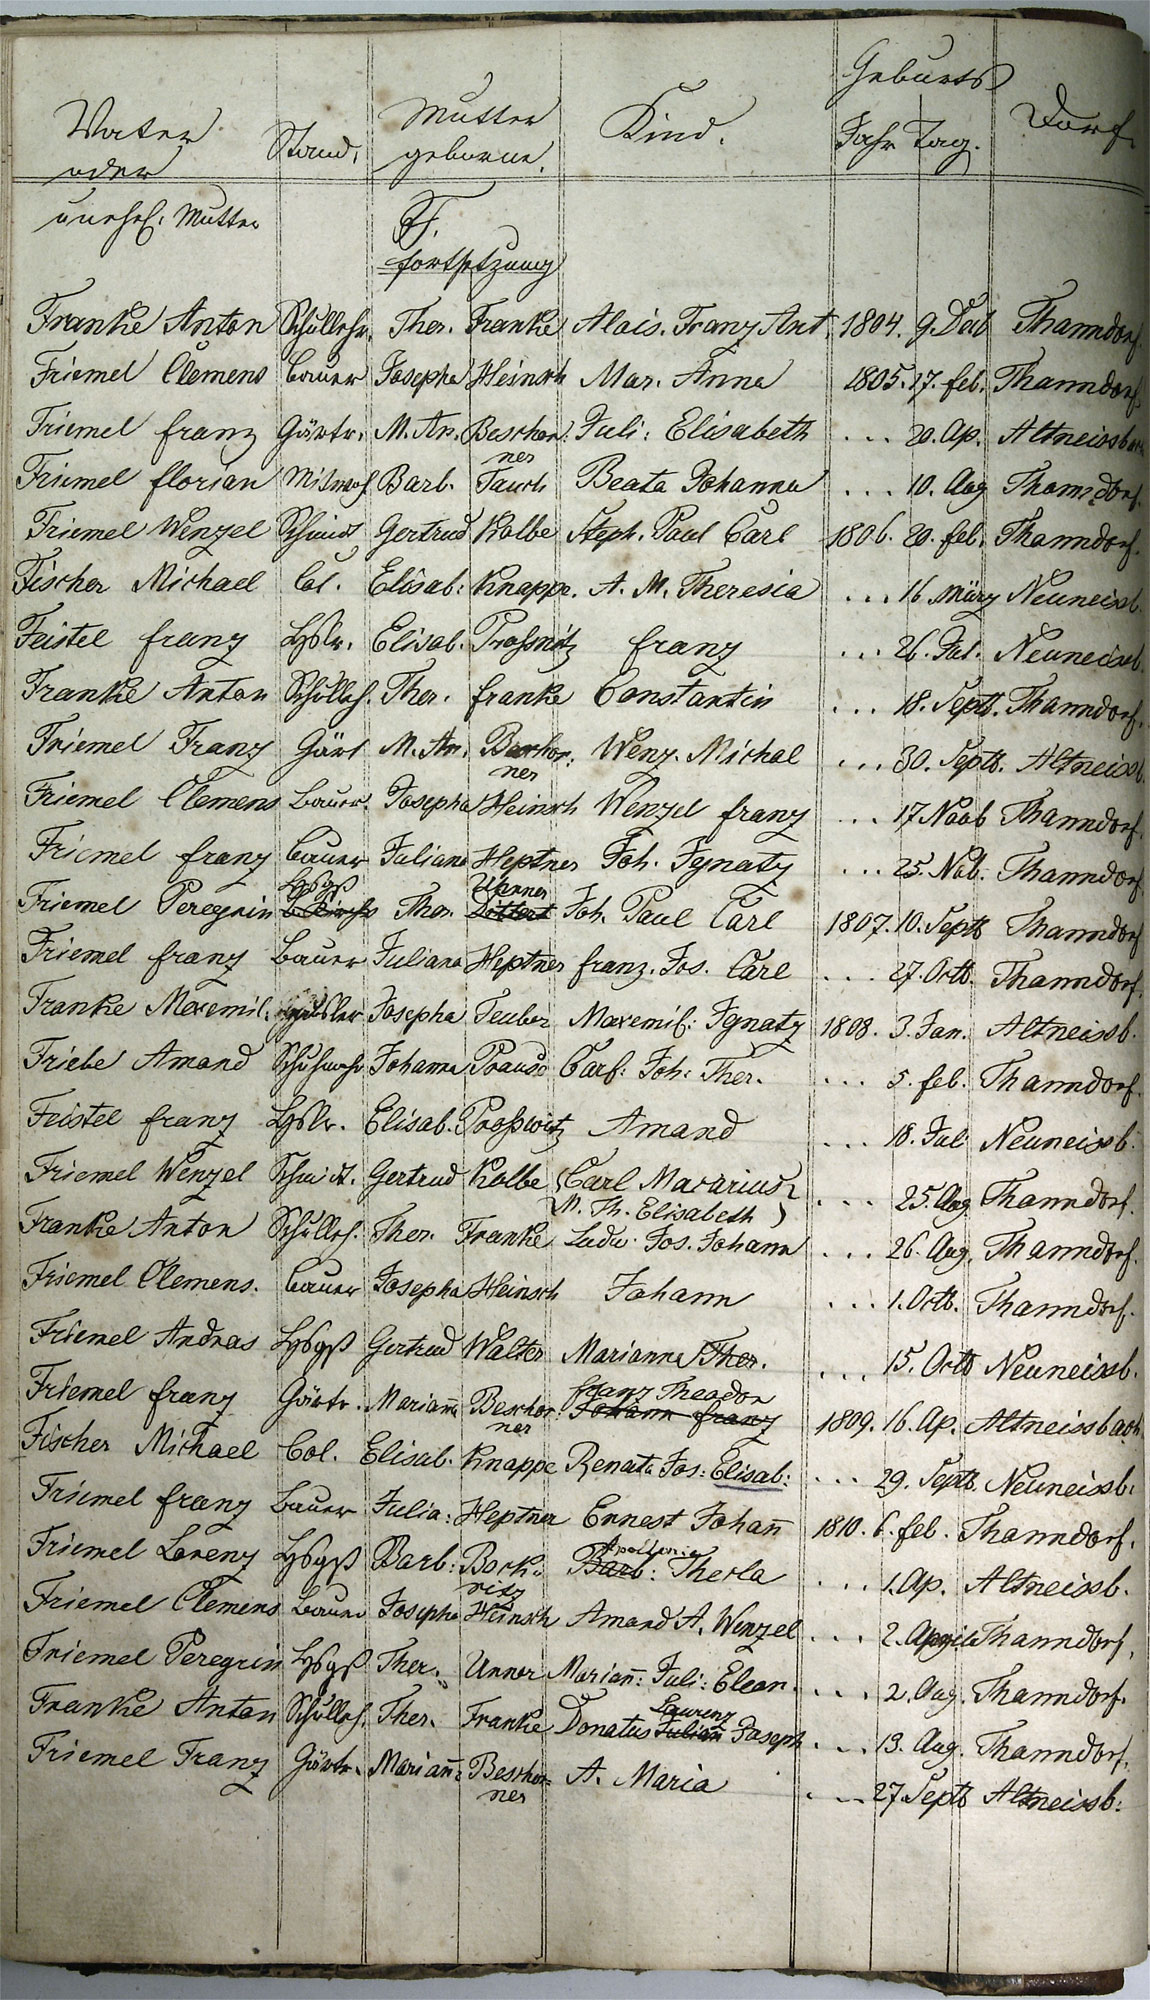 Taufregister 1770 - 1889 Seite 26